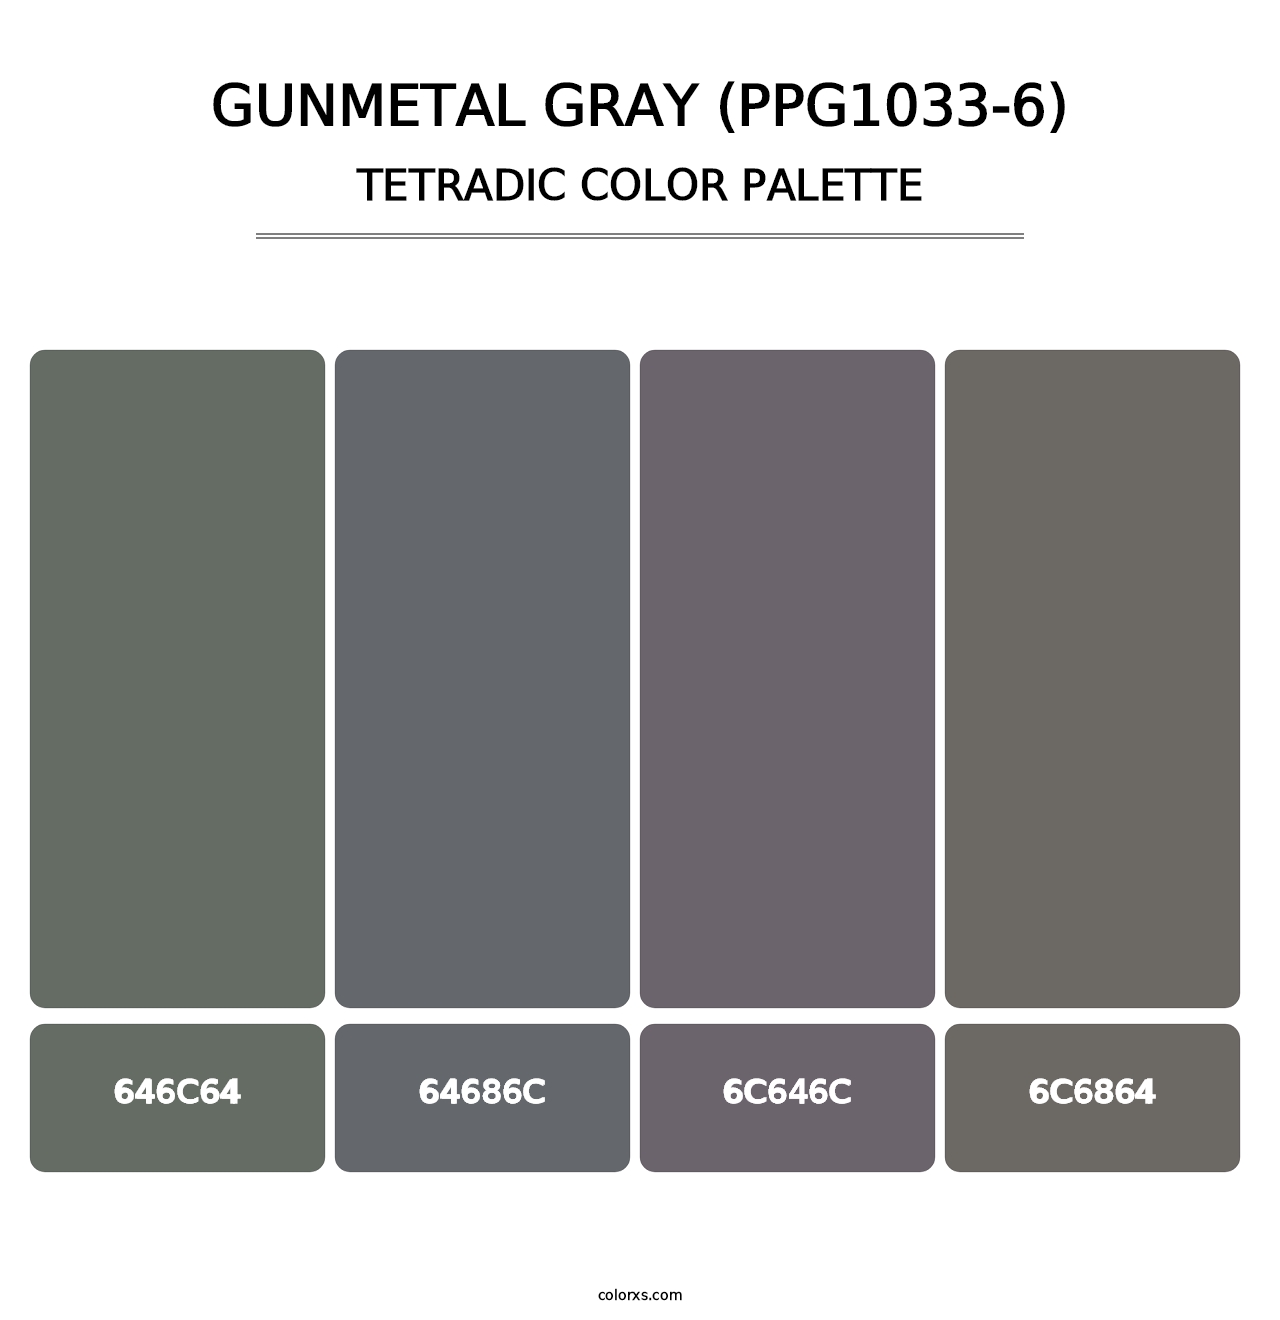 Gunmetal Gray (PPG1033-6) - Tetradic Color Palette